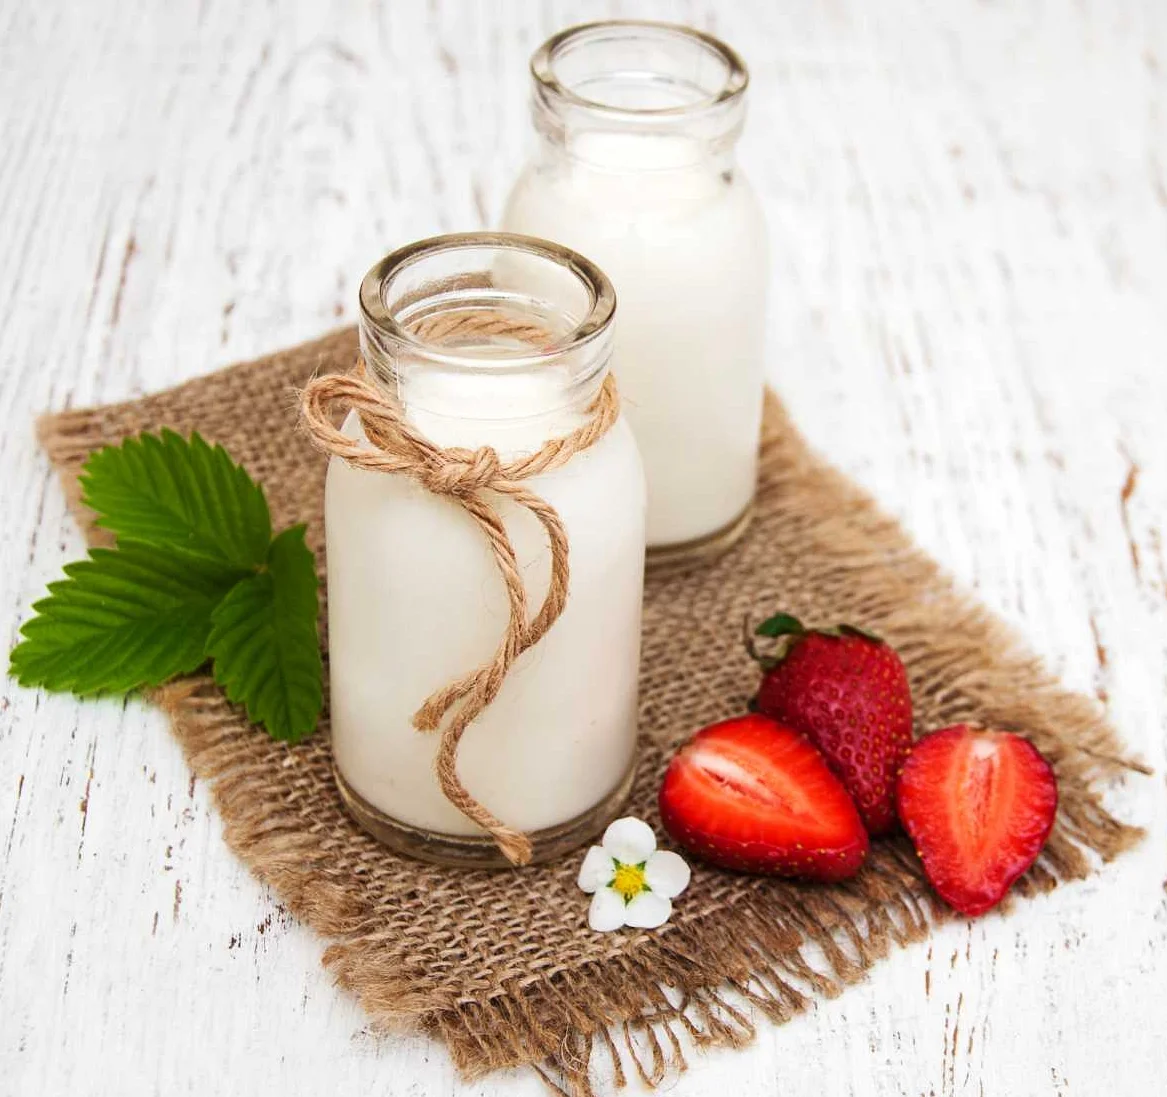 Альтернативы молочным продуктам при непереносимости лактозы